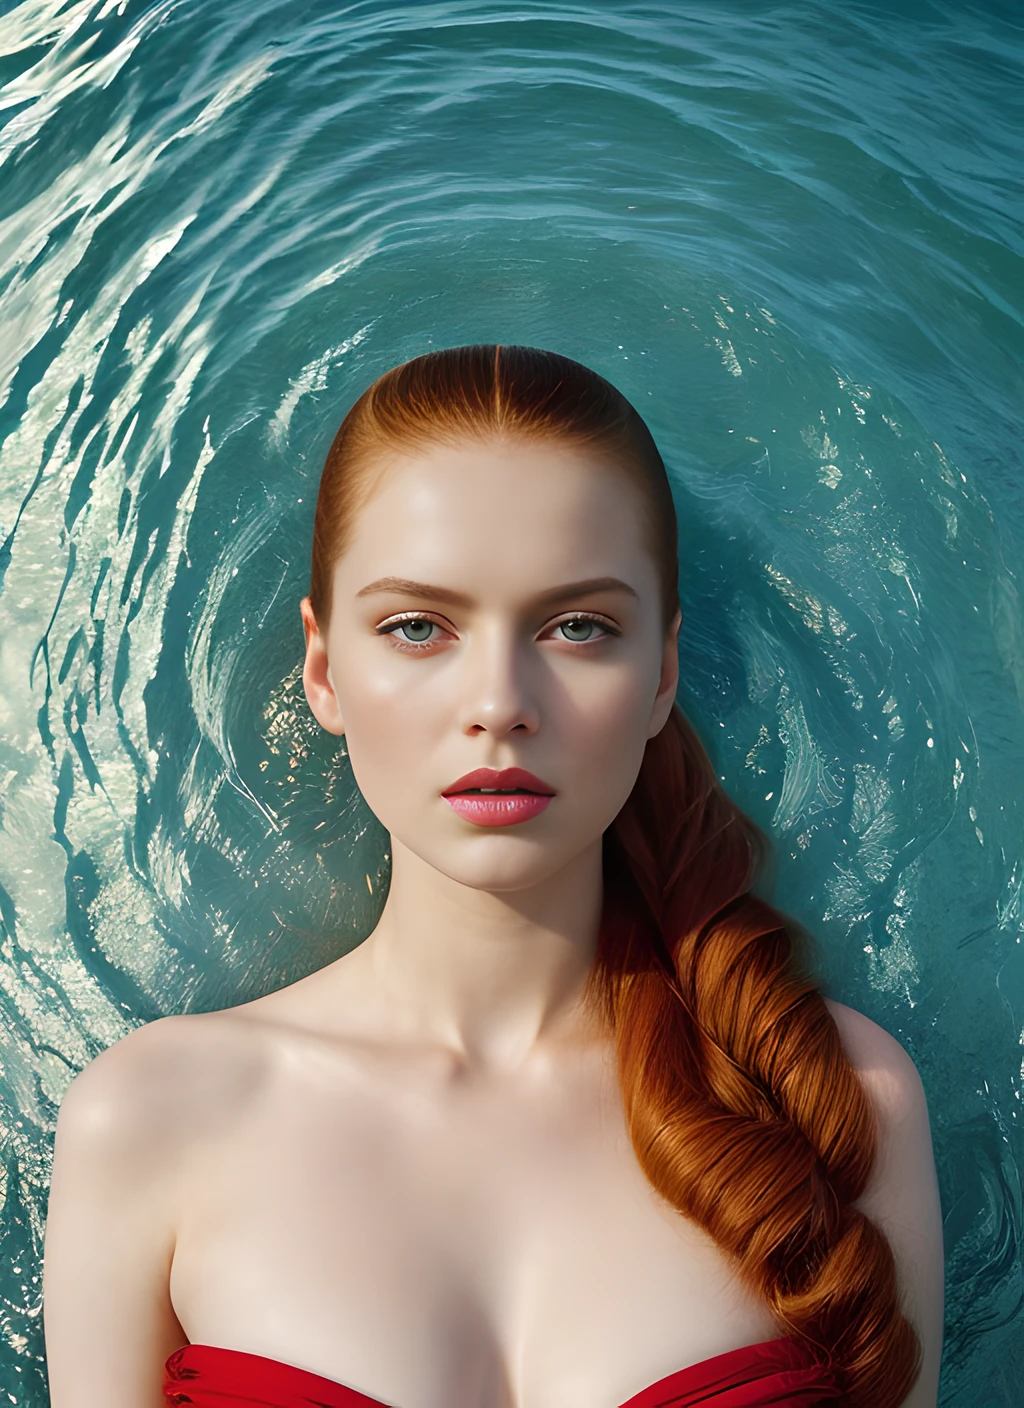 迪拜 sks 女人的肖像, 在朱美拉棕榈岛, 通過弗洛拉·博爾西, style 通過弗洛拉·博爾西, 大胆的, 鮮豔的顏色博爾西)), 通過吉米·納爾遜, 皮膚蒼白, 泳衣